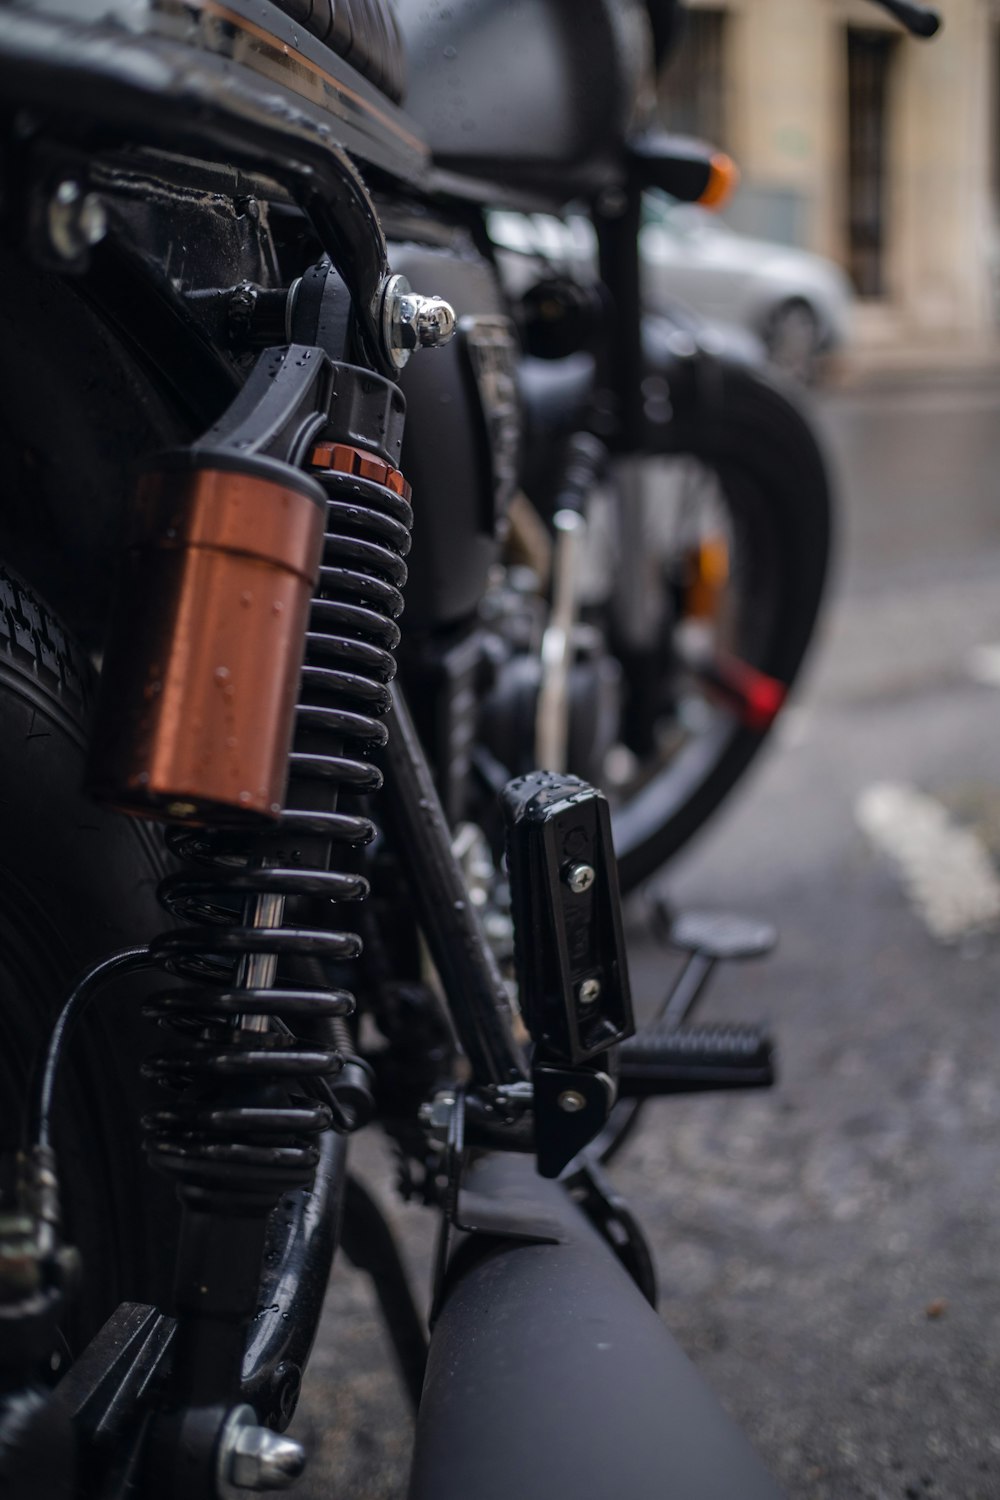 black motorcycle